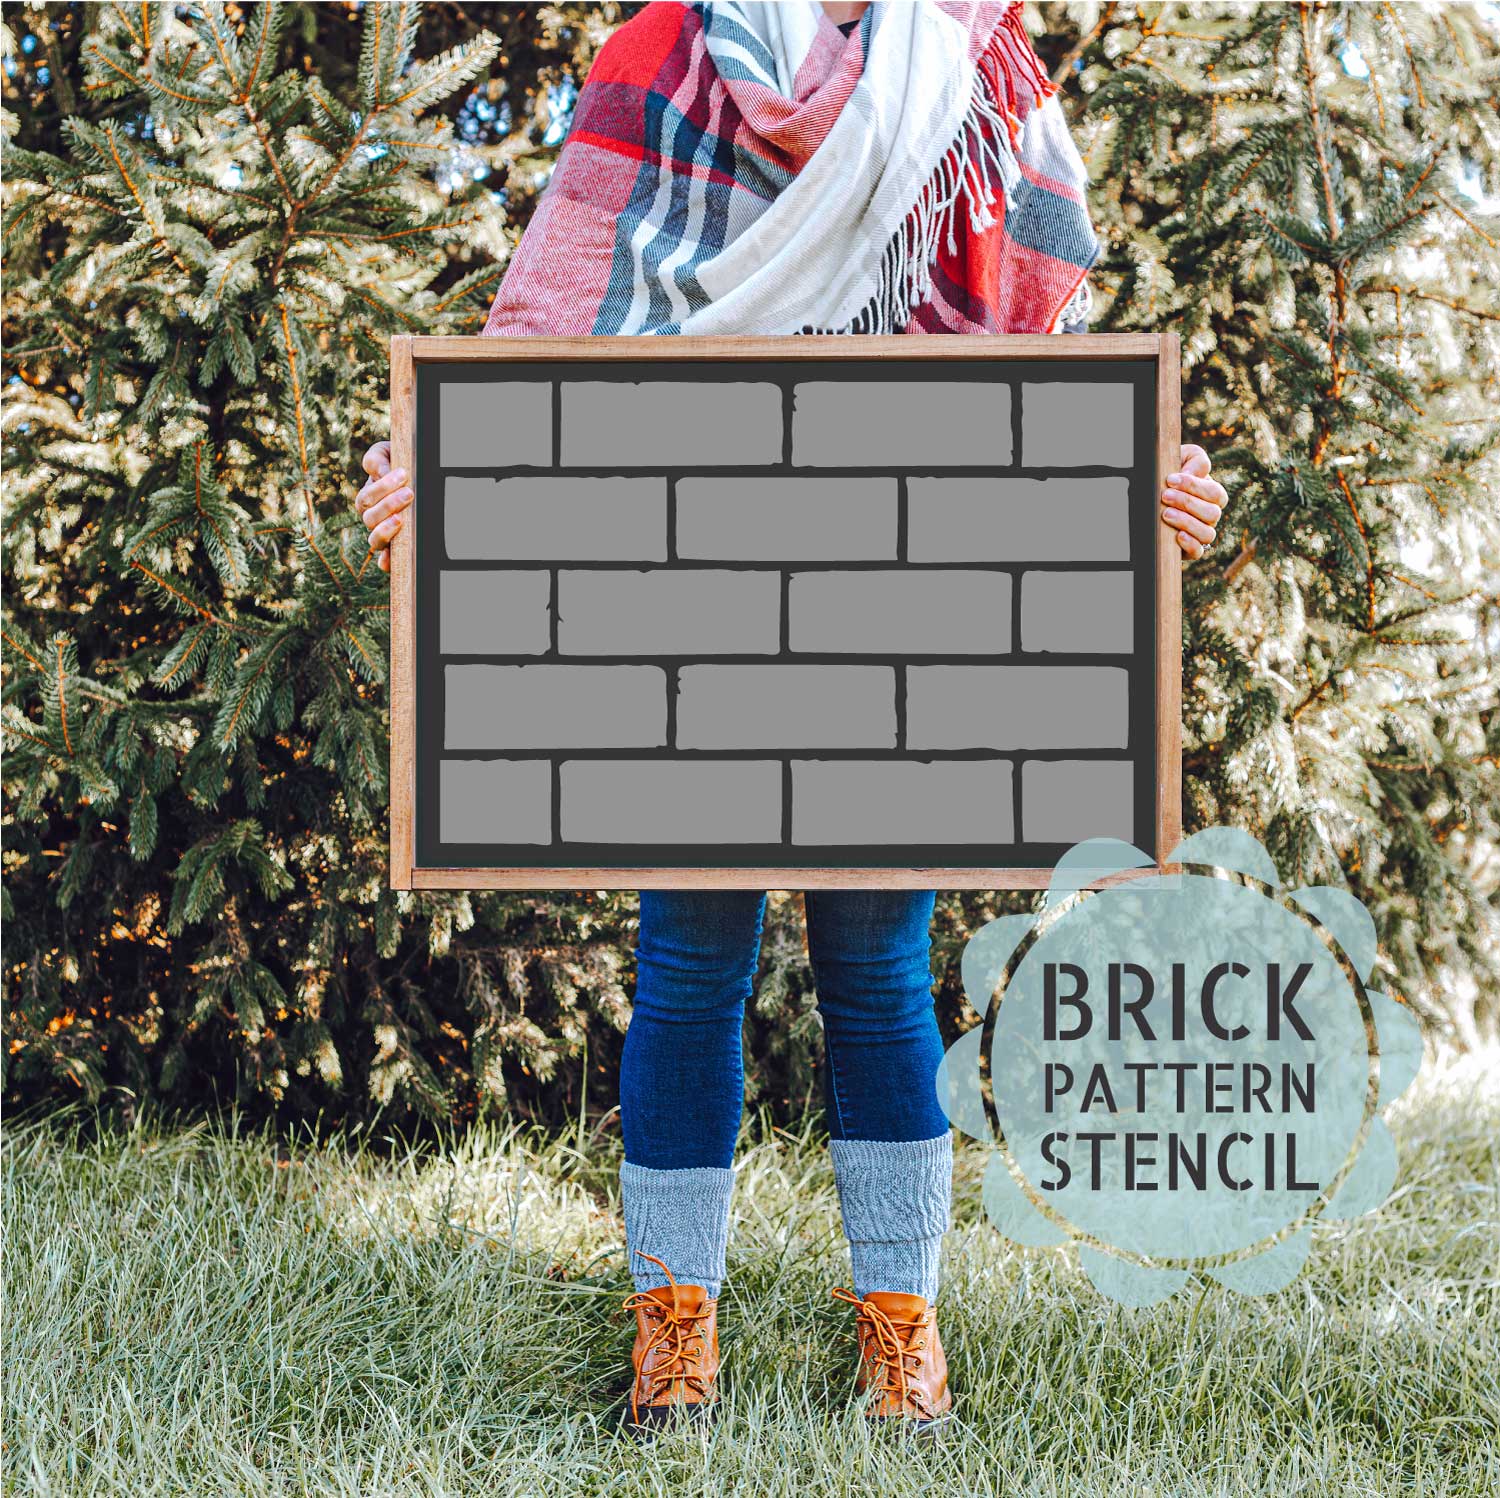 Brick Wall Stencil